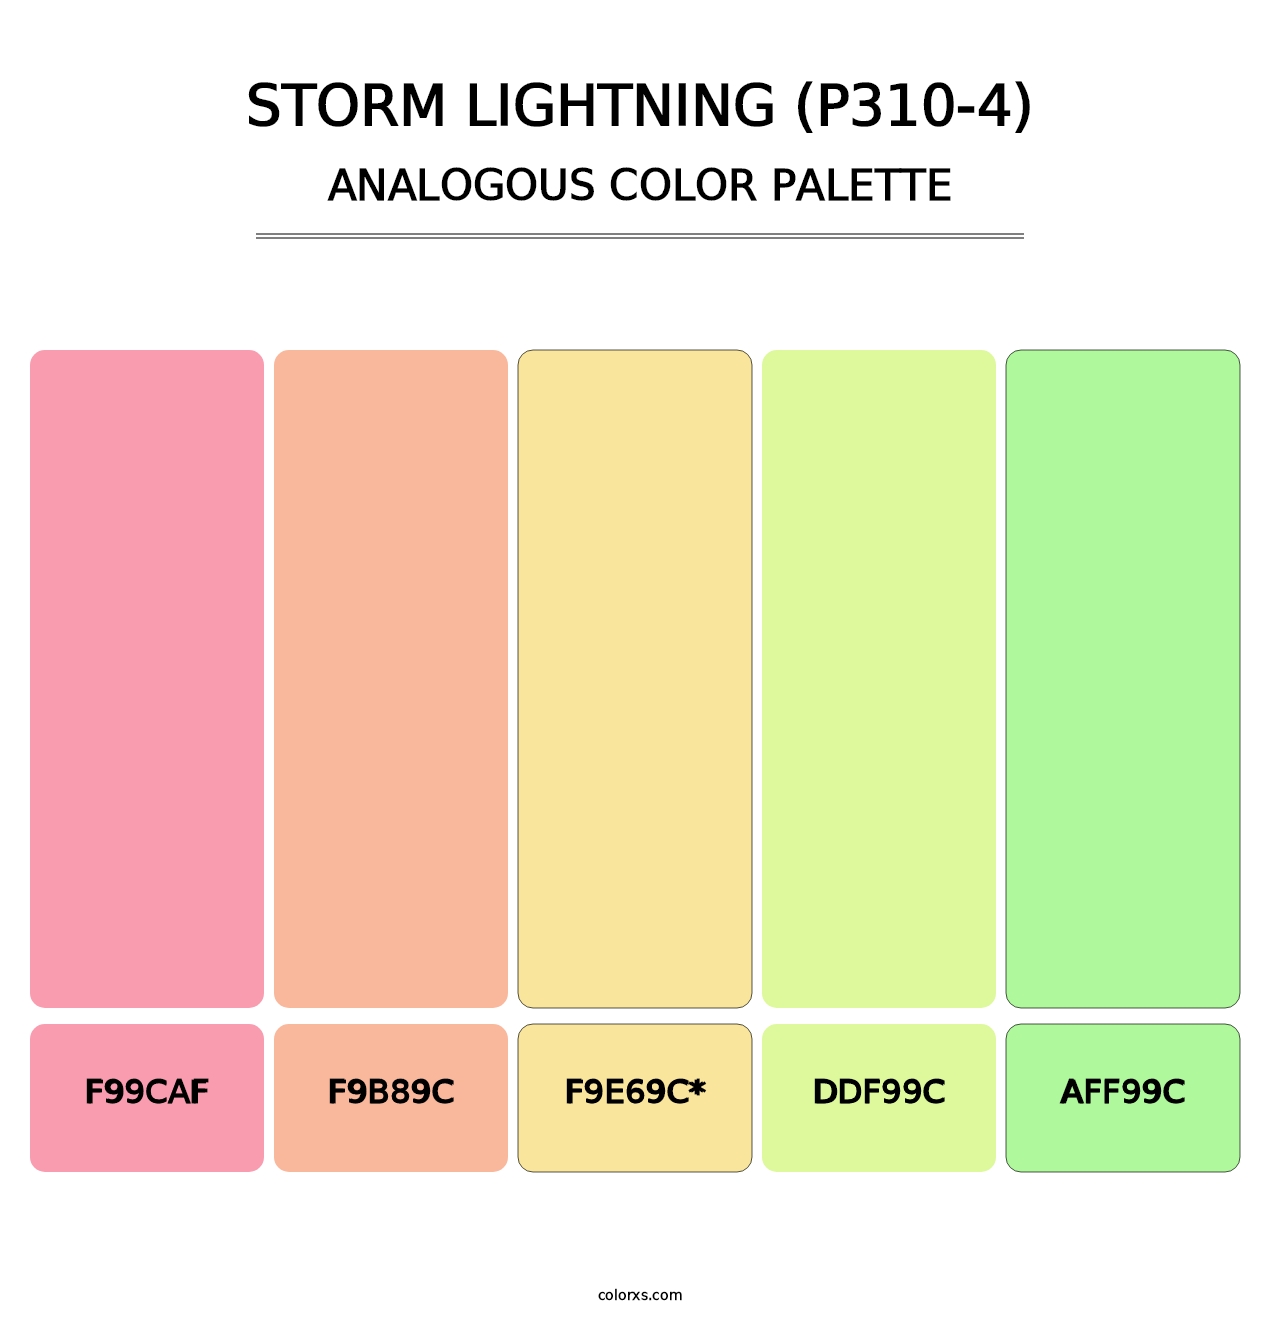 Storm Lightning (P310-4) - Analogous Color Palette